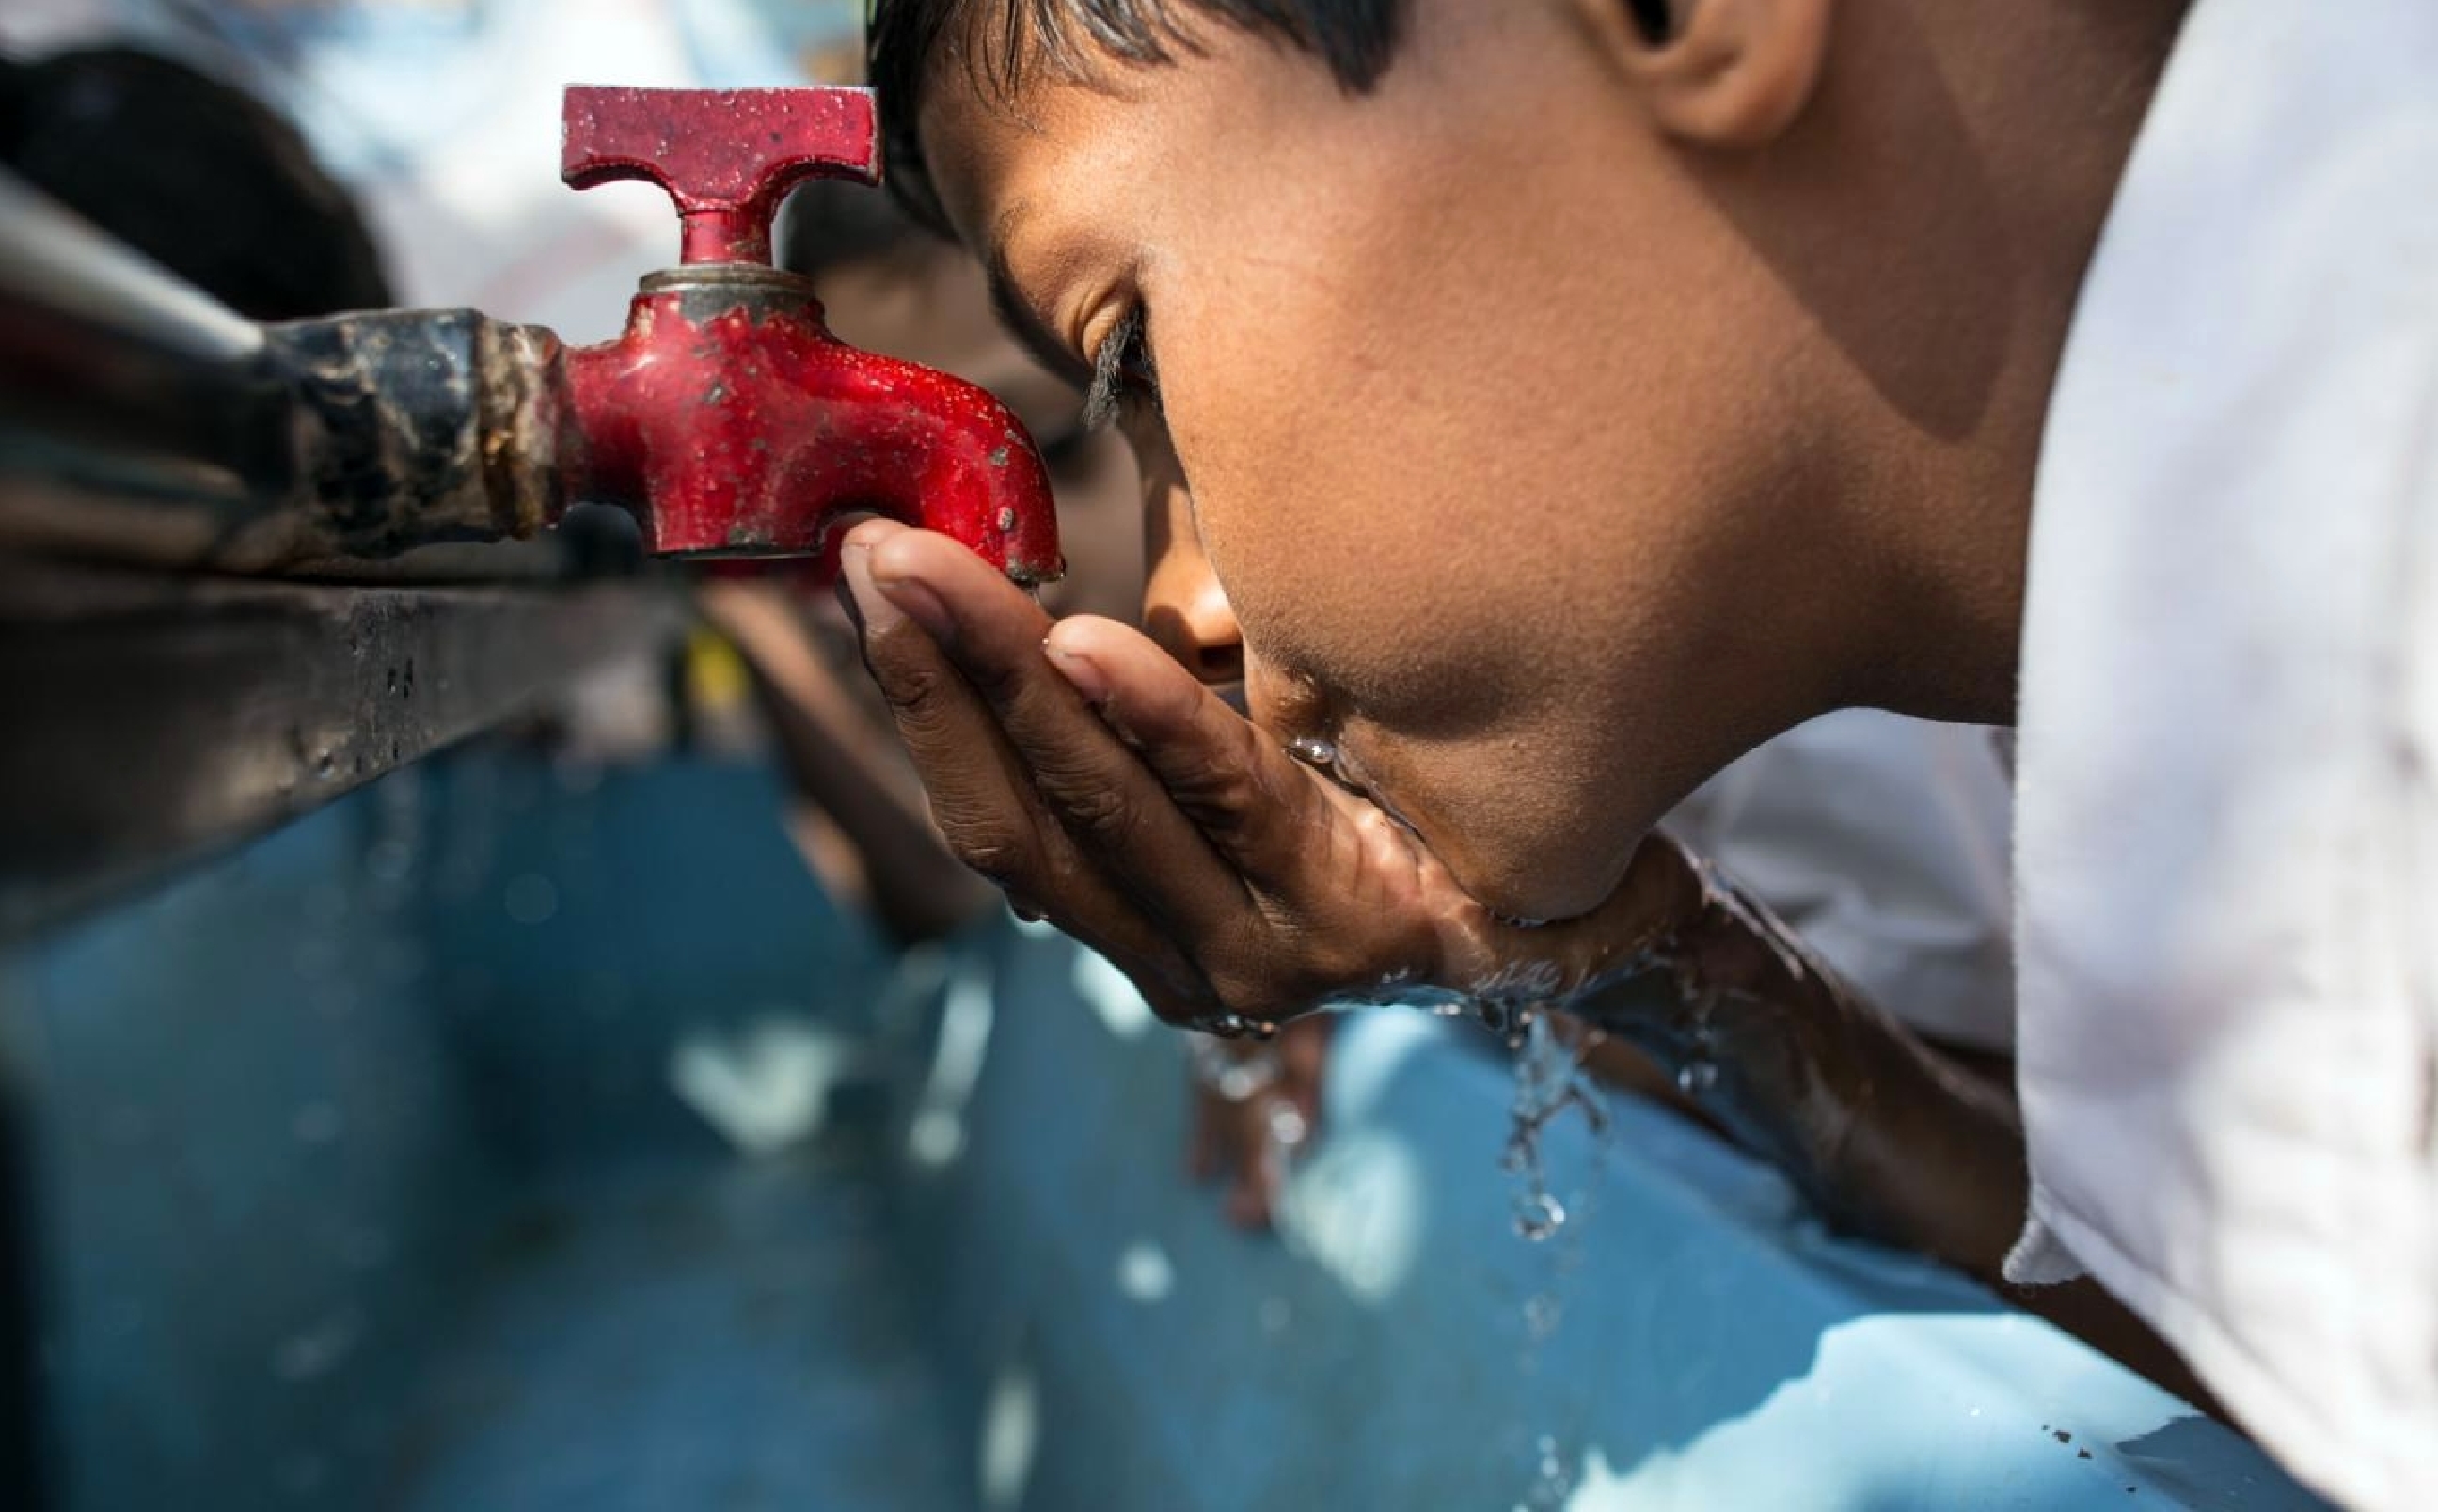 Pemerintah terus berupaya meningkatkan kualitas air minum rumah tangga